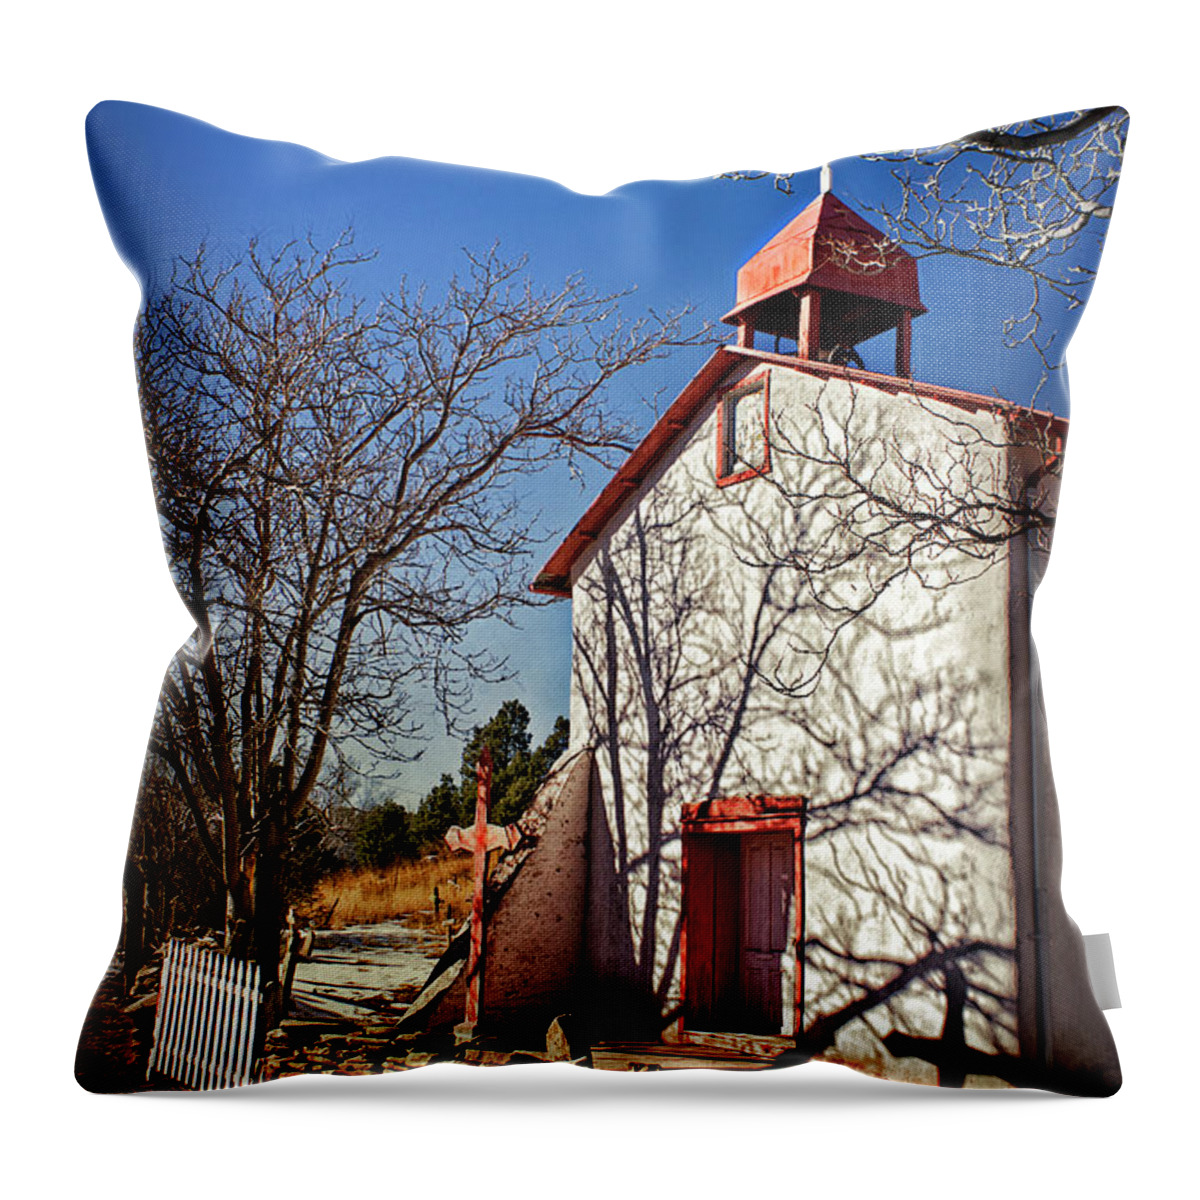 Church Throw Pillow featuring the photograph Nuestra Senora de la Luz at Canoncito by Priscilla Burgers